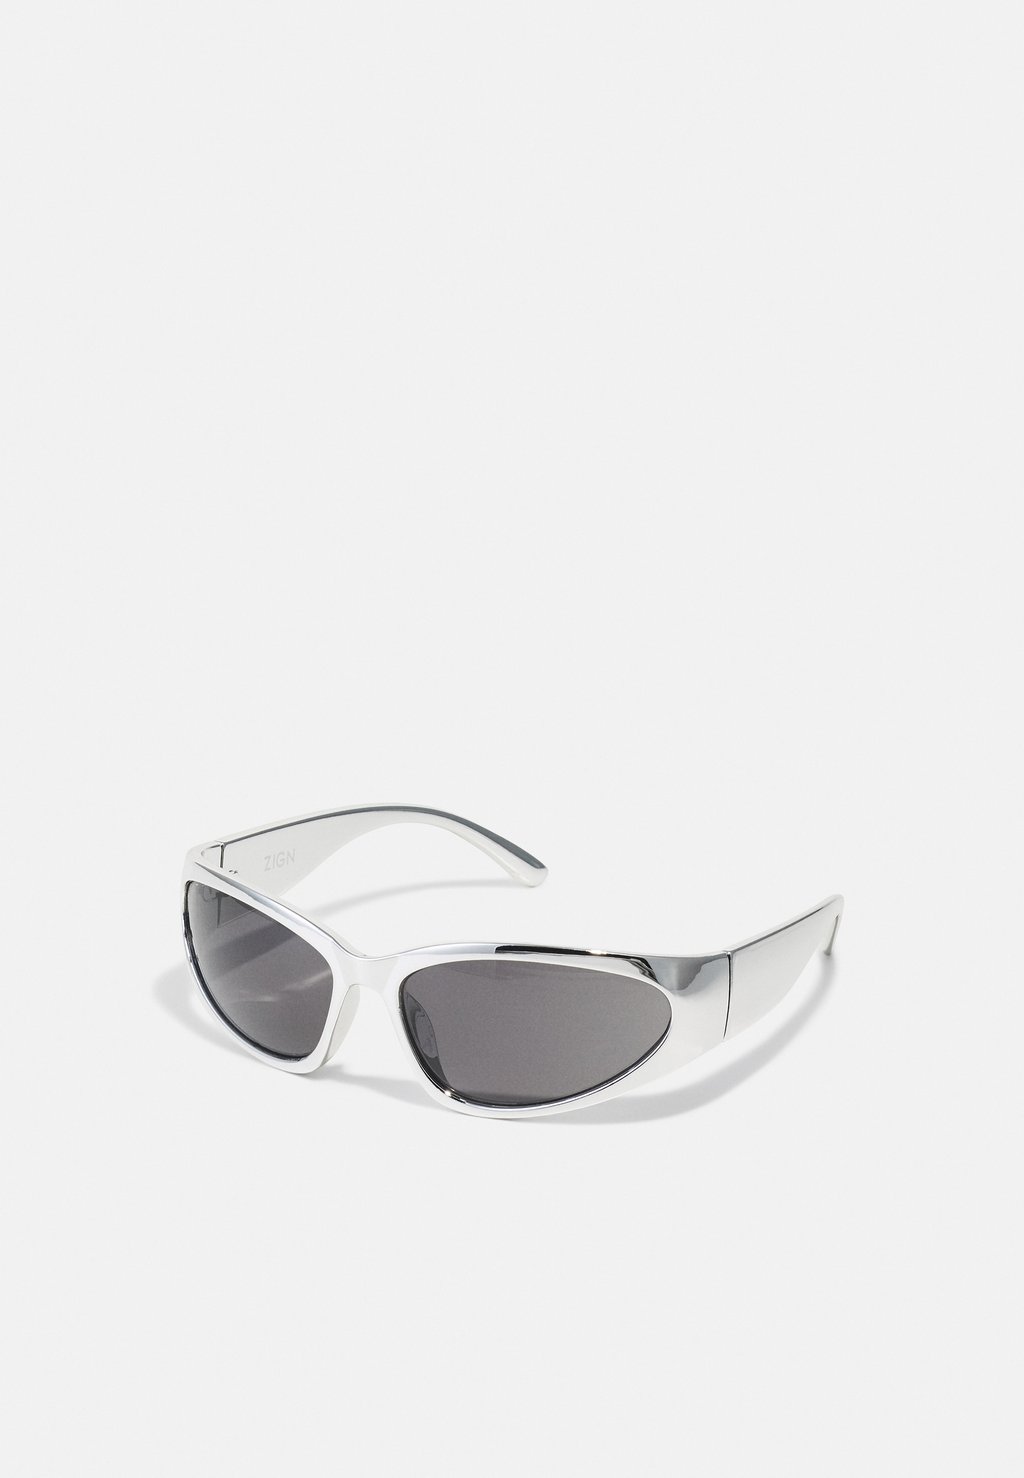 Солнцезащитные очки UNISEX Zign, цвет metallic silver-coloured солнцезащитные очки unisex gucci цвет black silver coloured